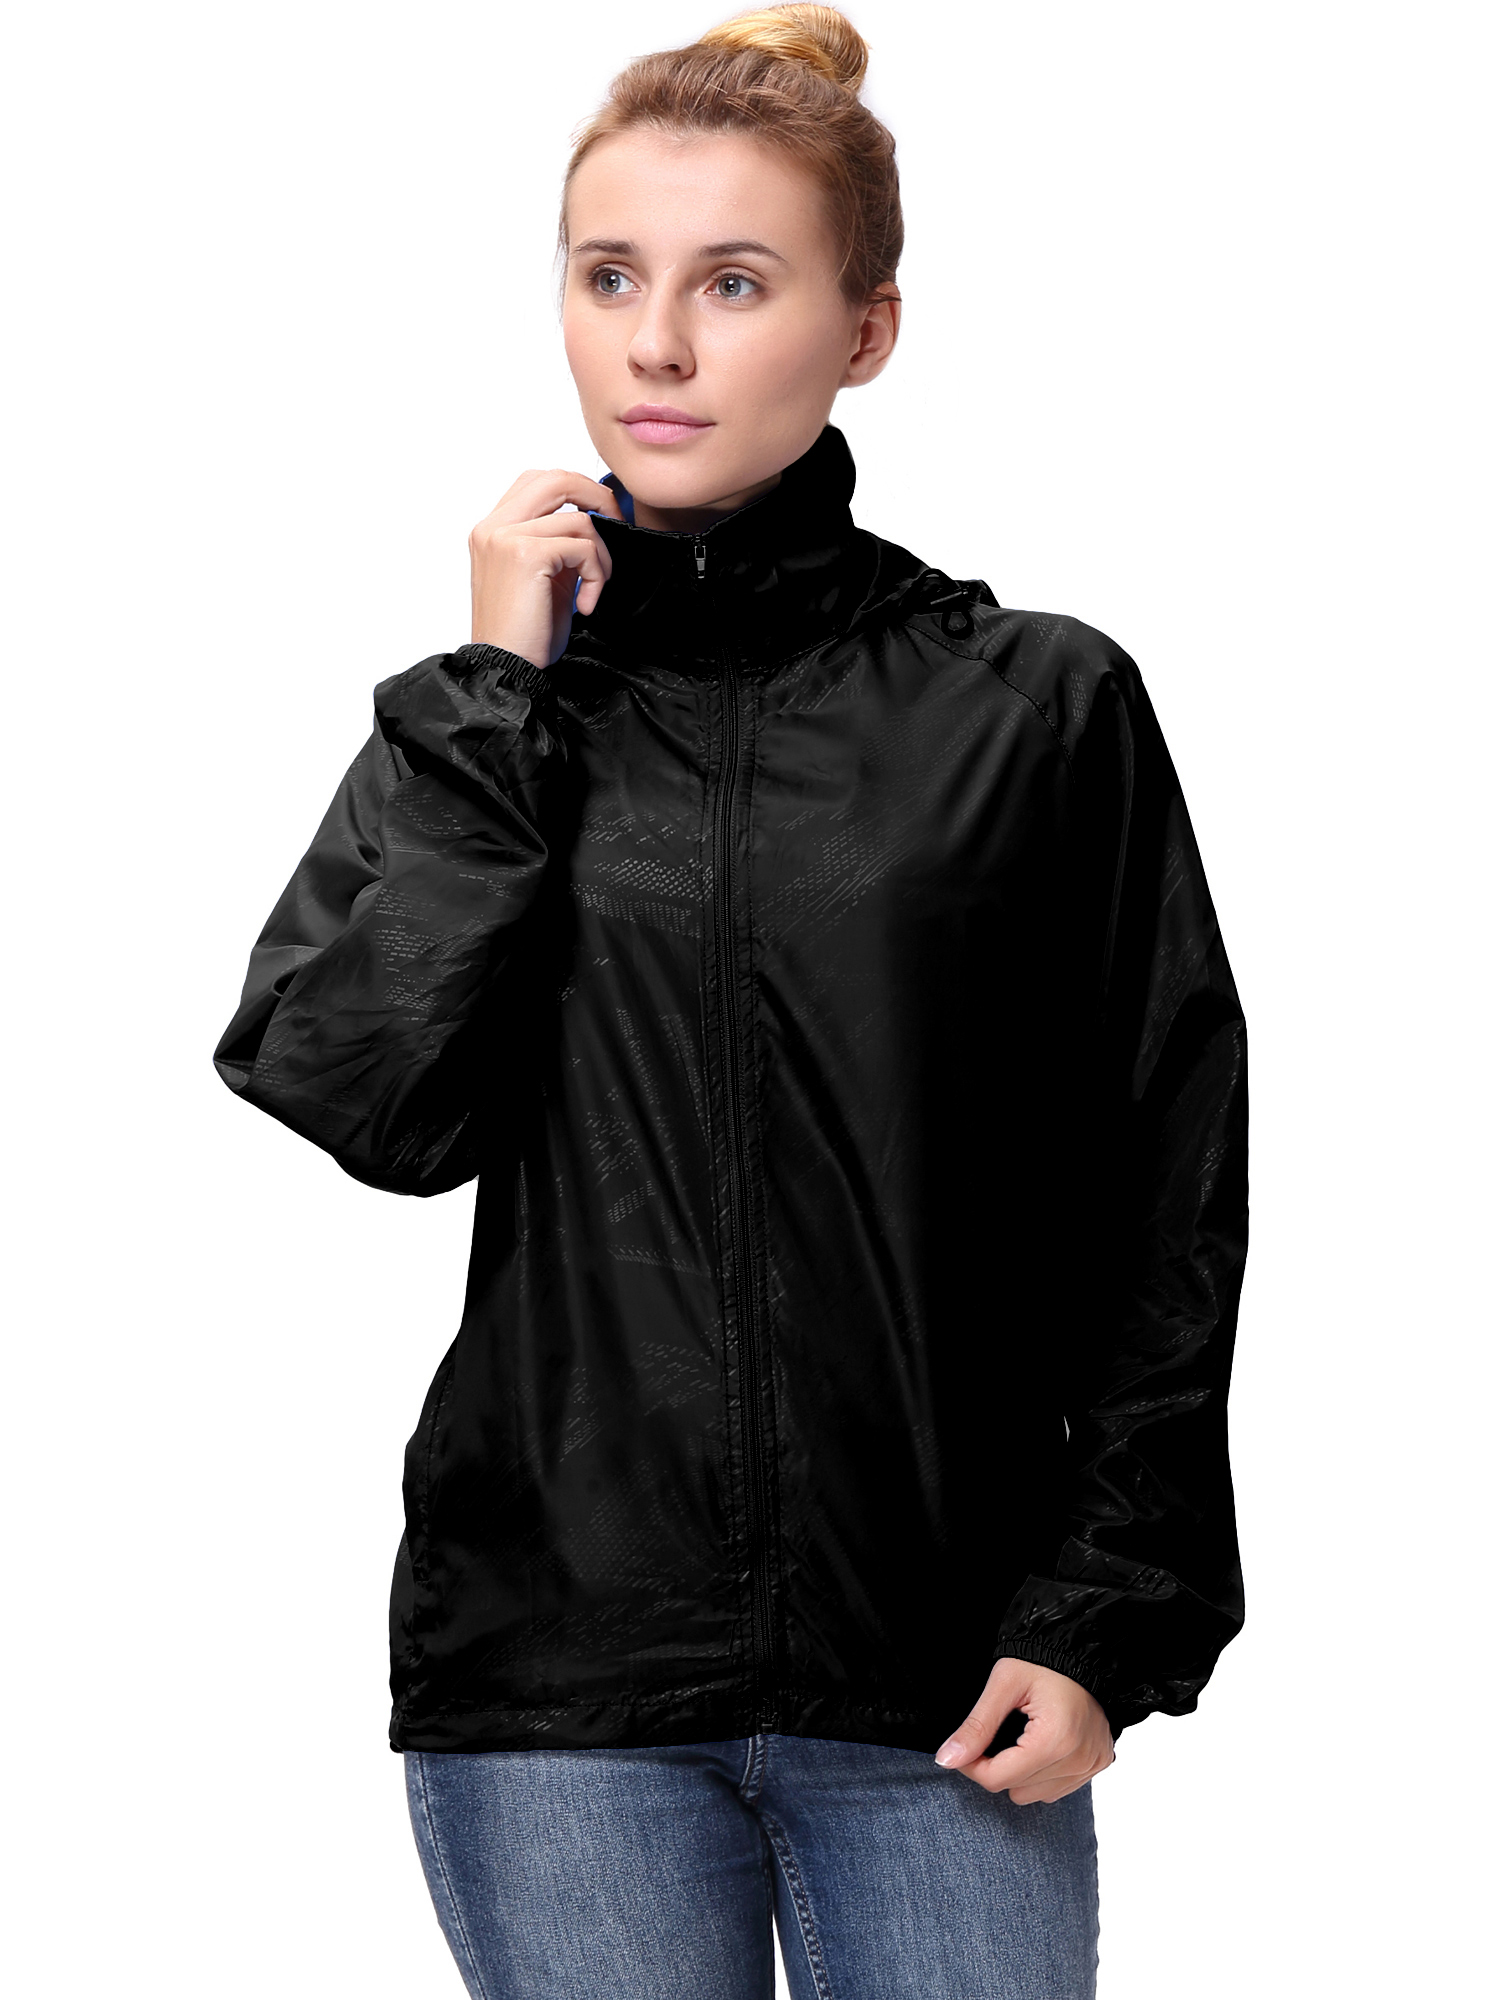 Fashion Womens/Mens Outdoor Lightweight windbreaker Jackets Waterproof Rain Coat Outwear Zip-Up Long Sleeve Hoodie Sport Windbreaker - image 3 of 9